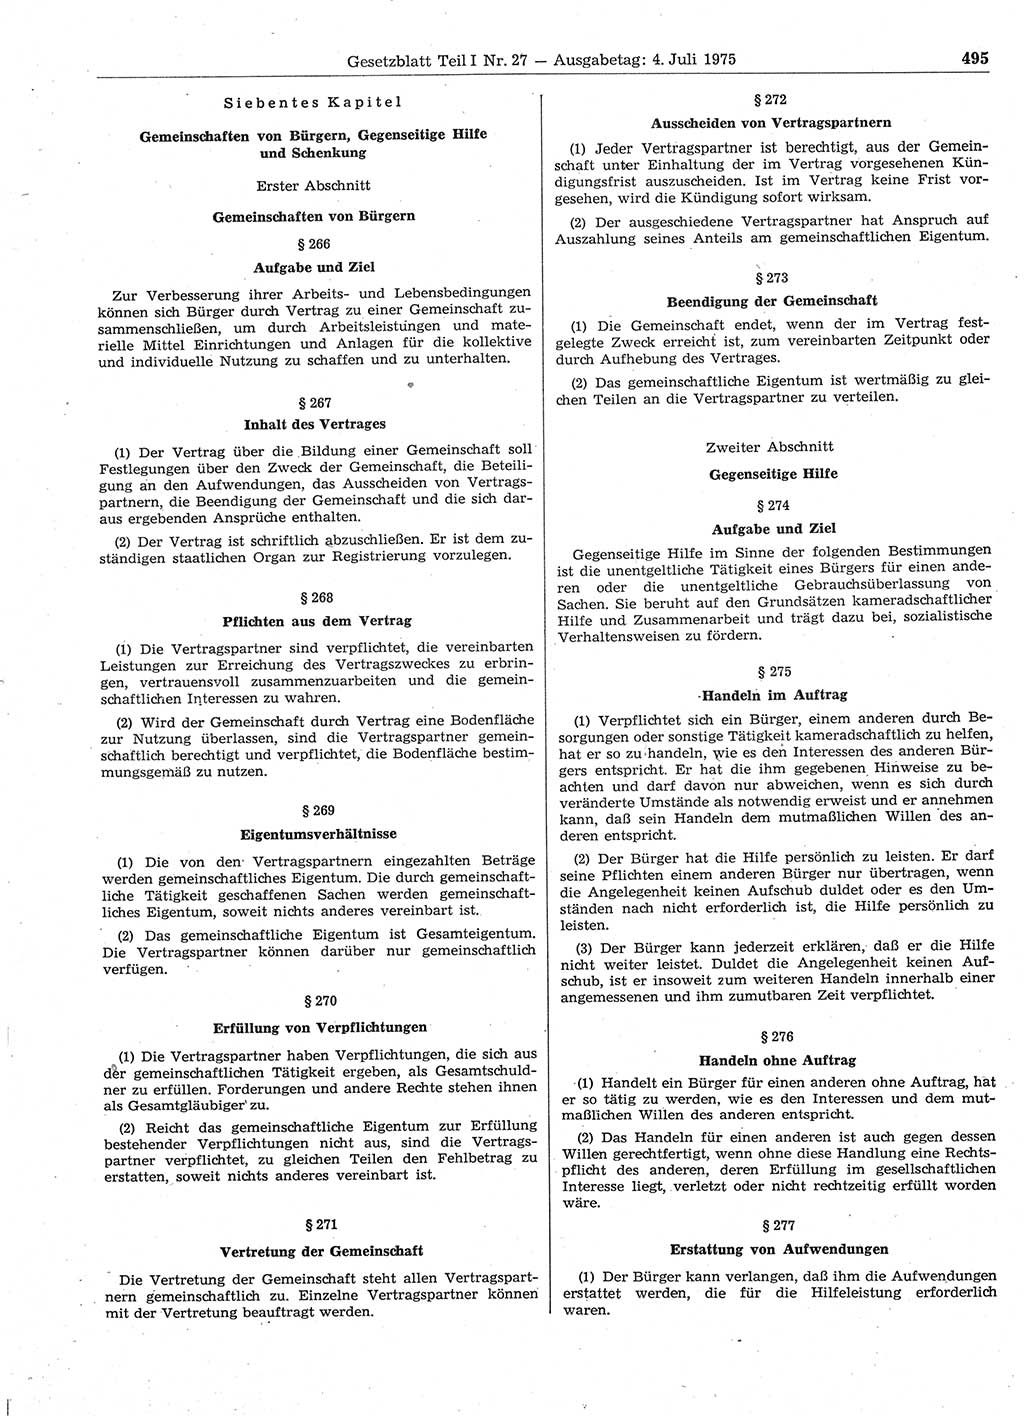 Gesetzblatt (GBl.) der Deutschen Demokratischen Republik (DDR) Teil Ⅰ 1975, Seite 495 (GBl. DDR Ⅰ 1975, S. 495)